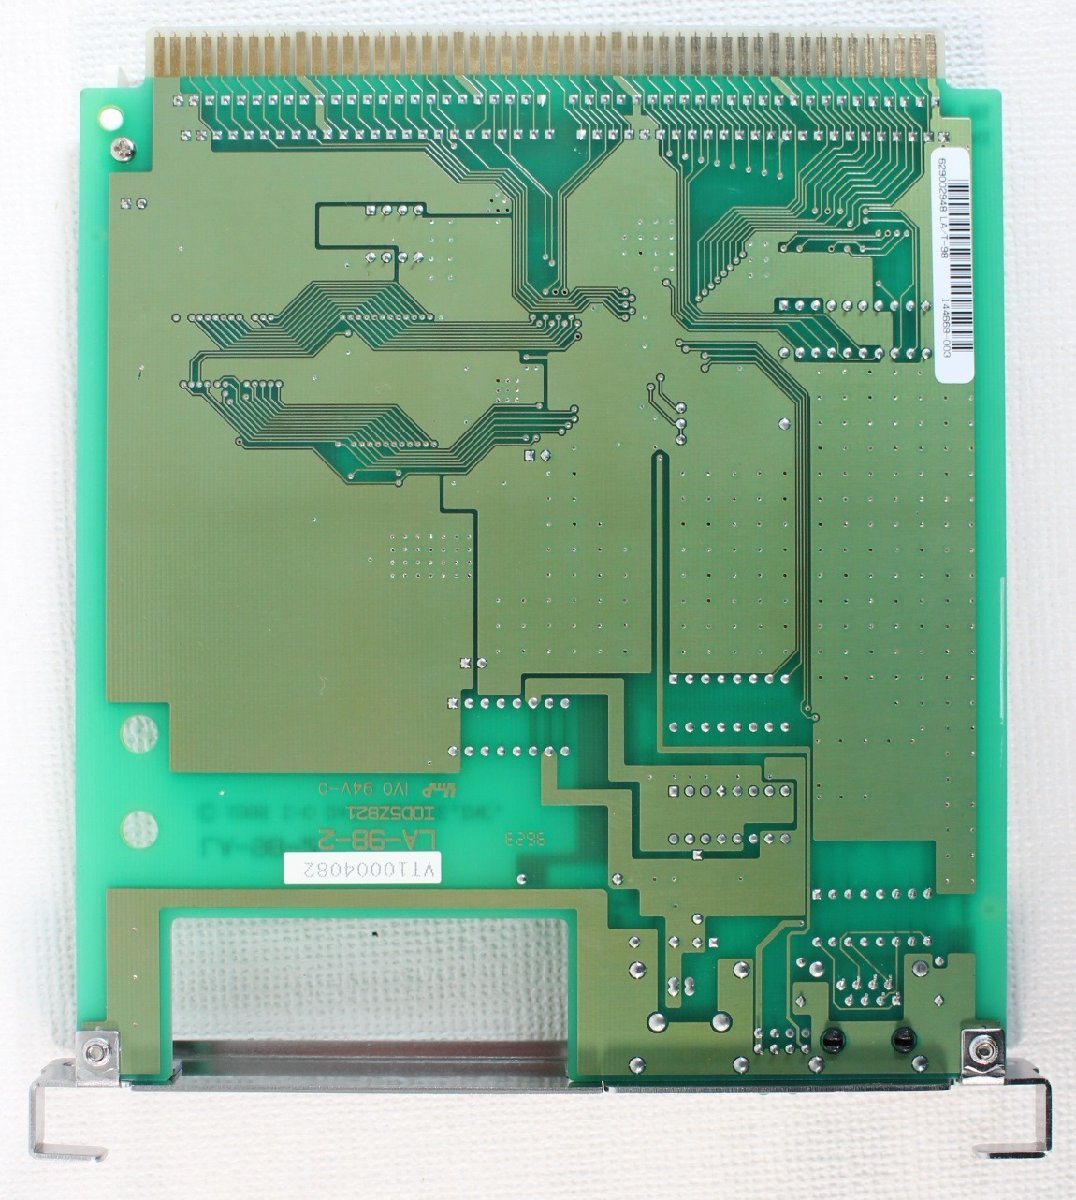 * утиль * I-O DATA LA/T-98 PC-9800 серии для LAN панель не проверено товар (2745602)